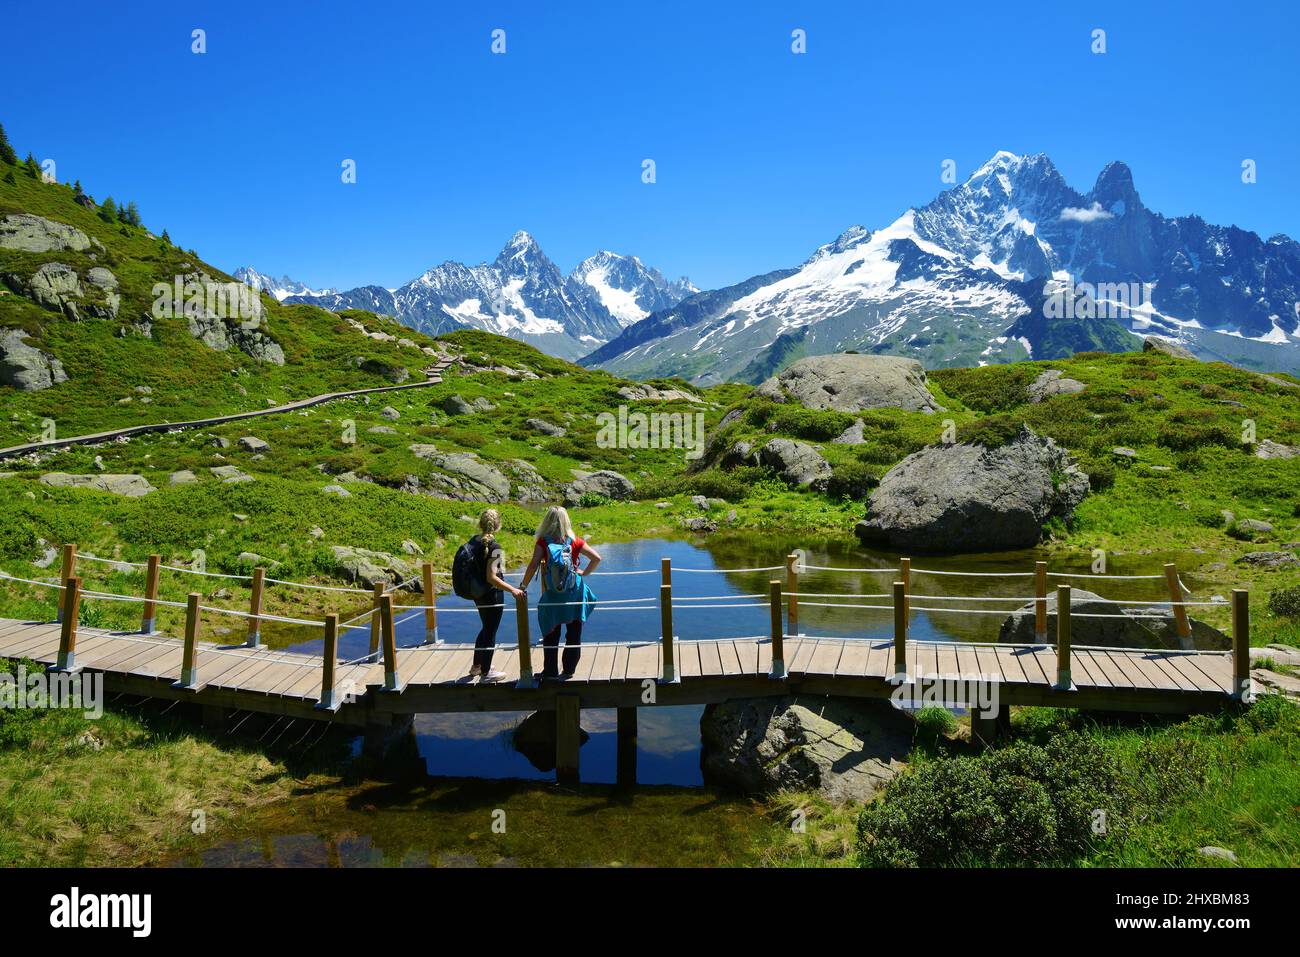 Paesaggio idilliaco con la catena montuosa del Monte Bianco nelle giornate di sole. Escursionisti in viaggio nella riserva naturale Aiguilles Rouges, Alpi francesi, Francia, Europa. Foto Stock